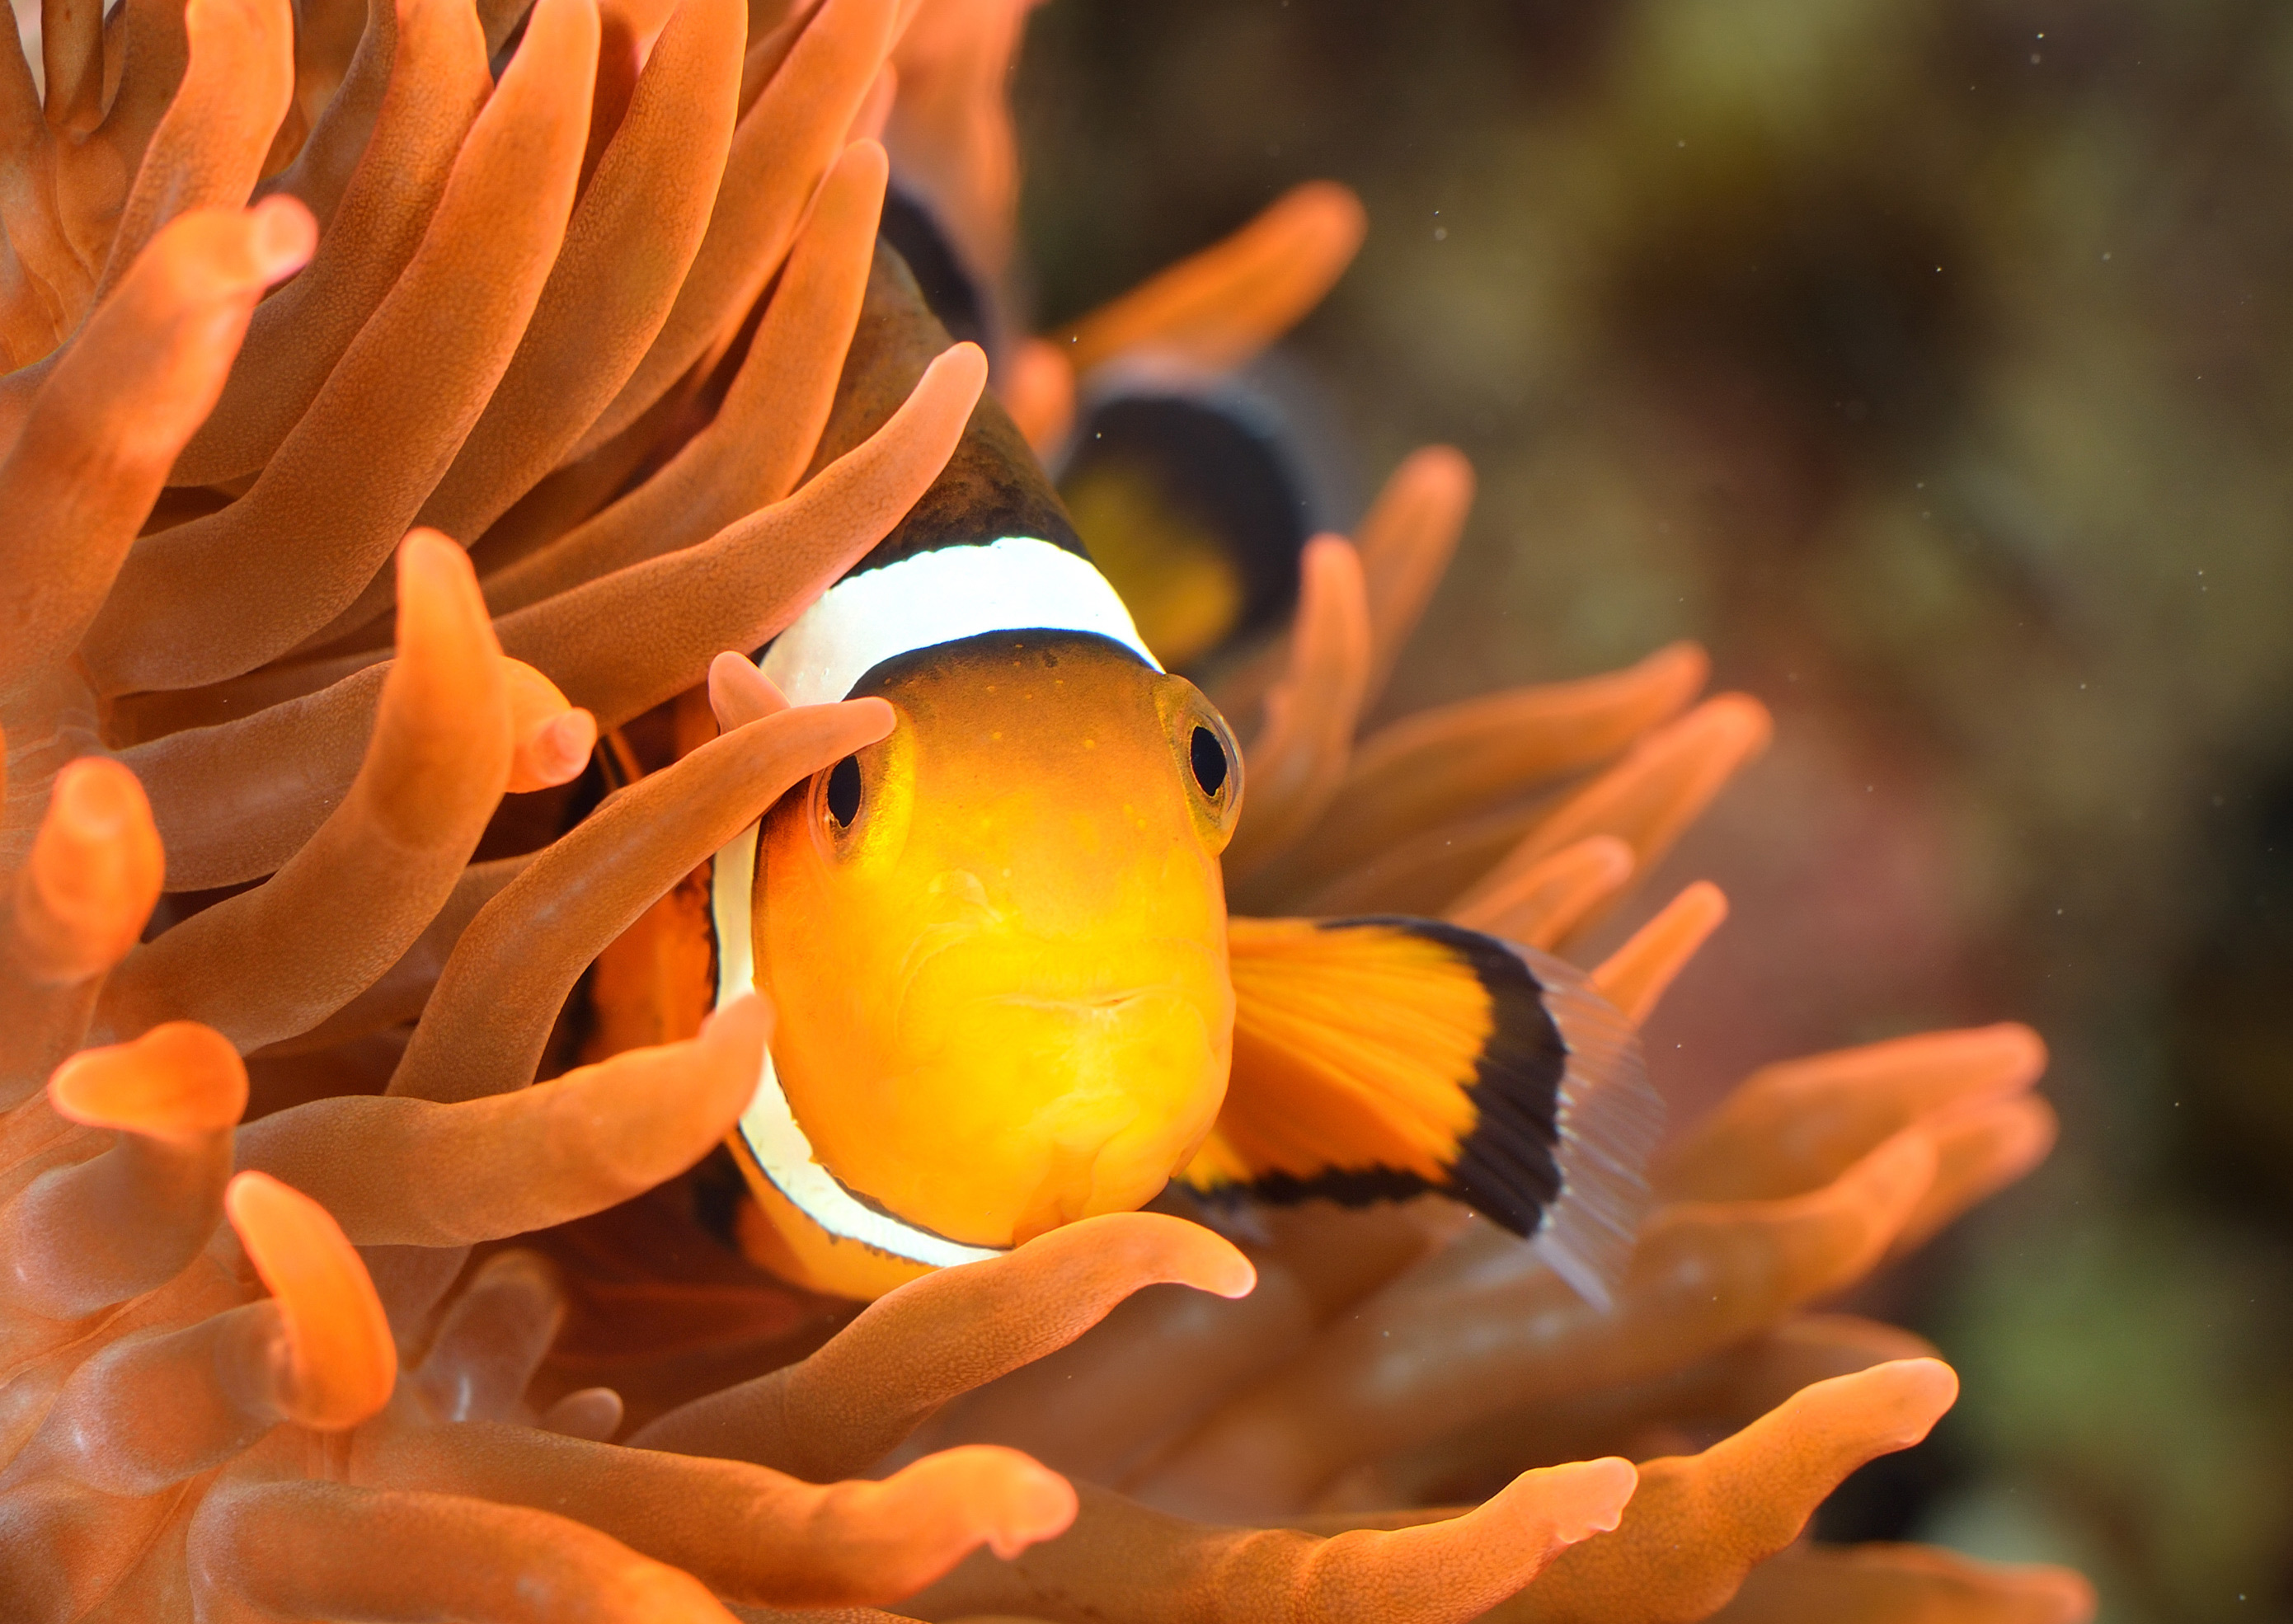 Clownfisch in Anemone